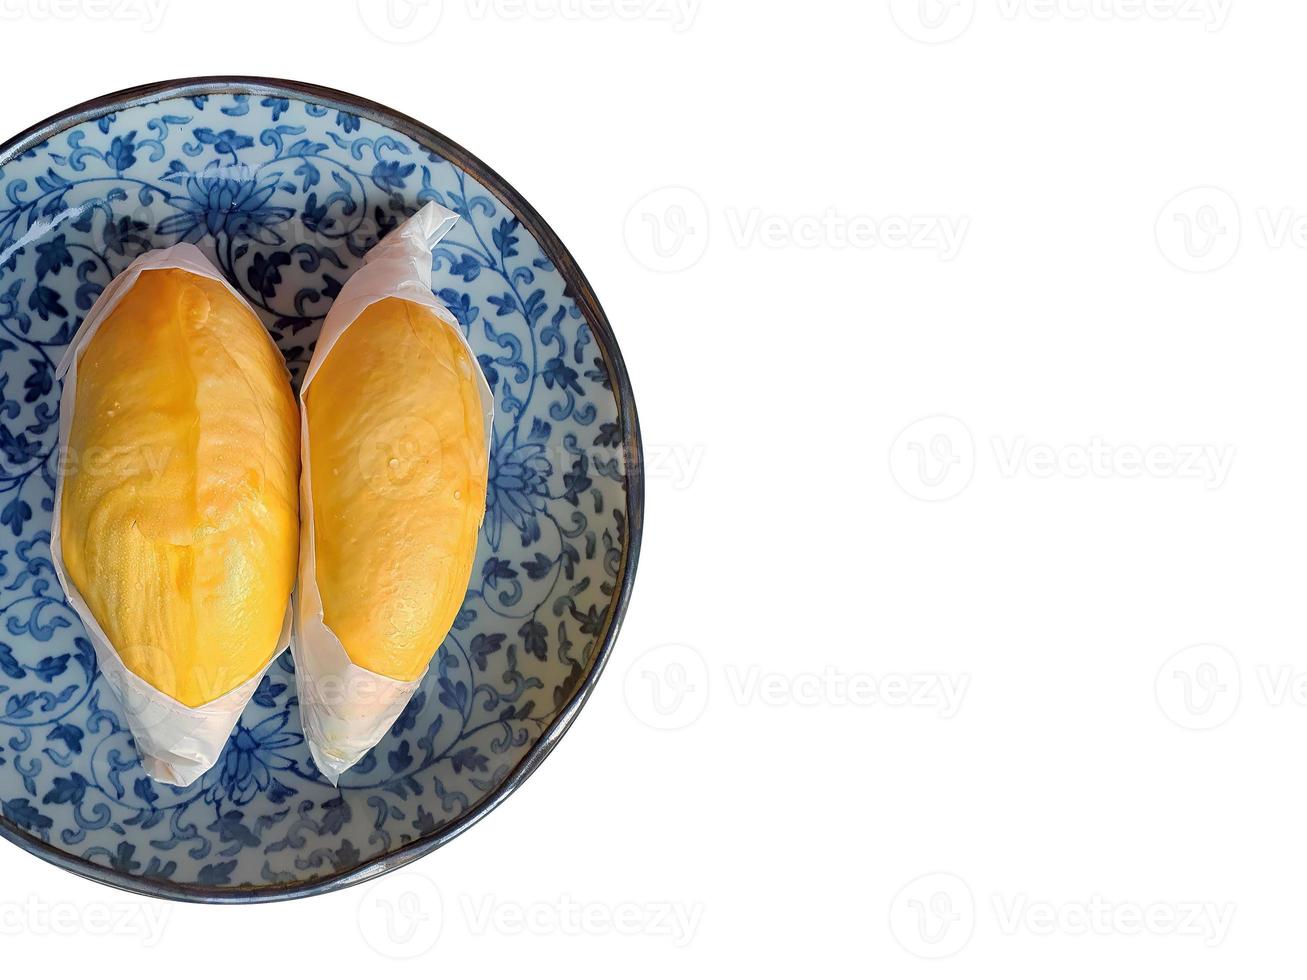 deux de viande de durian de couleur jaune doré enveloppée de papier blanc sur la plaque antique de couleur bleue, roi des fruits, forme et forme naturelles, isolé, fond blanc avec un tracé de détourage photo